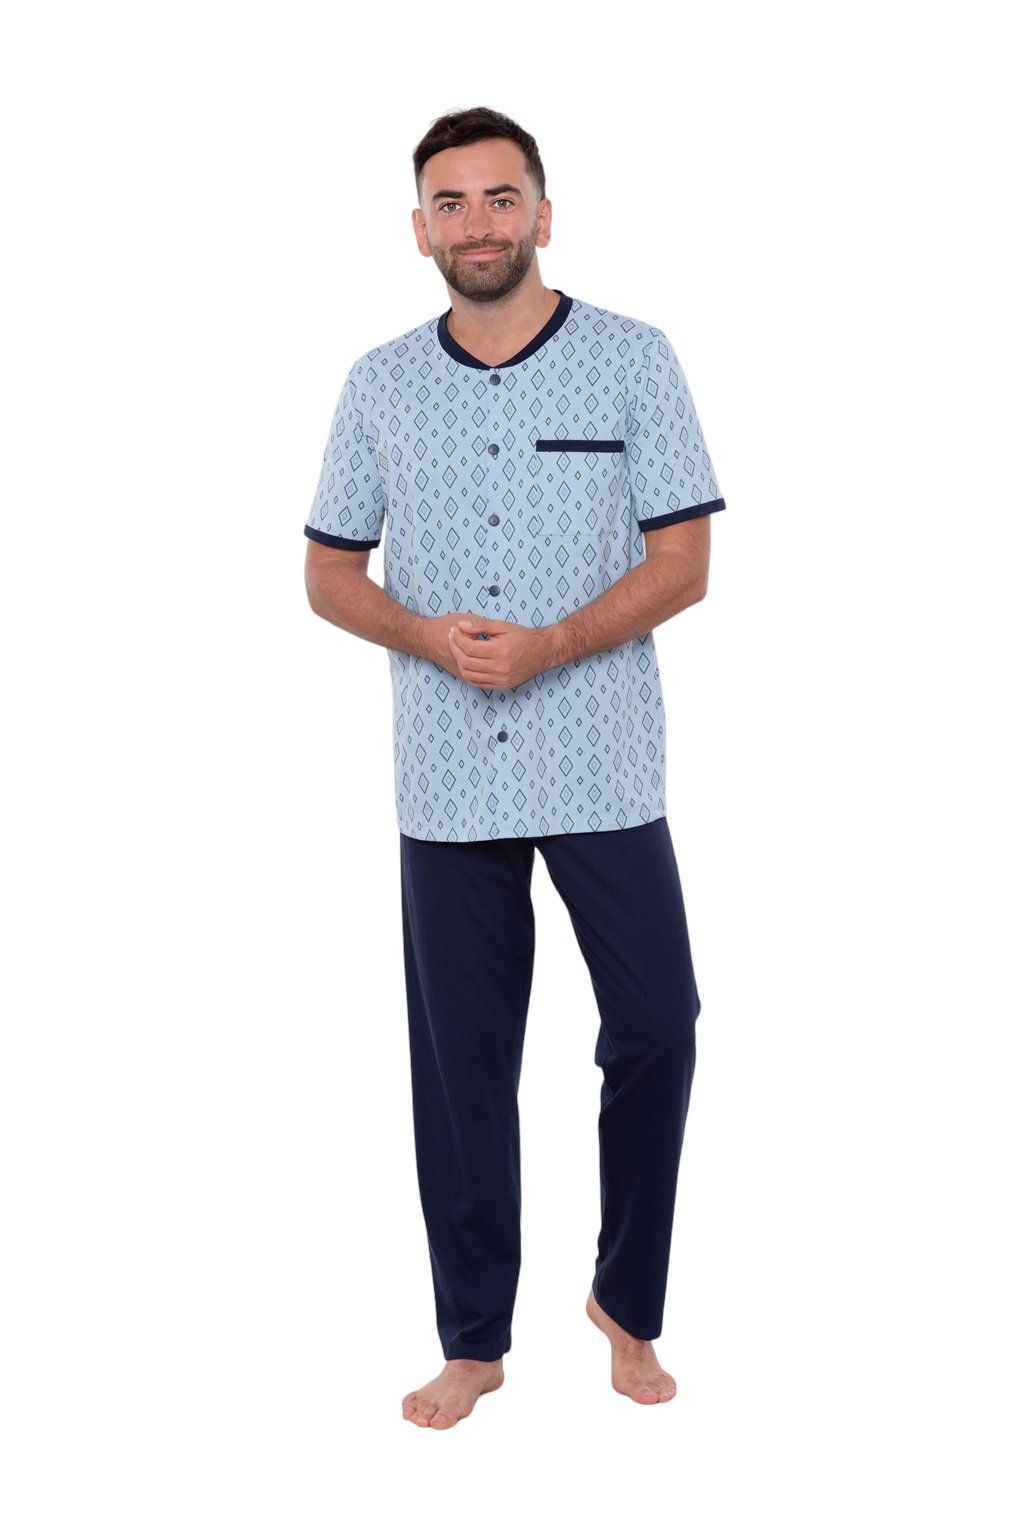 Pánské pyžamo s krátkým rukávem a dlouhými nohavicemi, 204122 477, modrá - Velikost 3XL Wadima